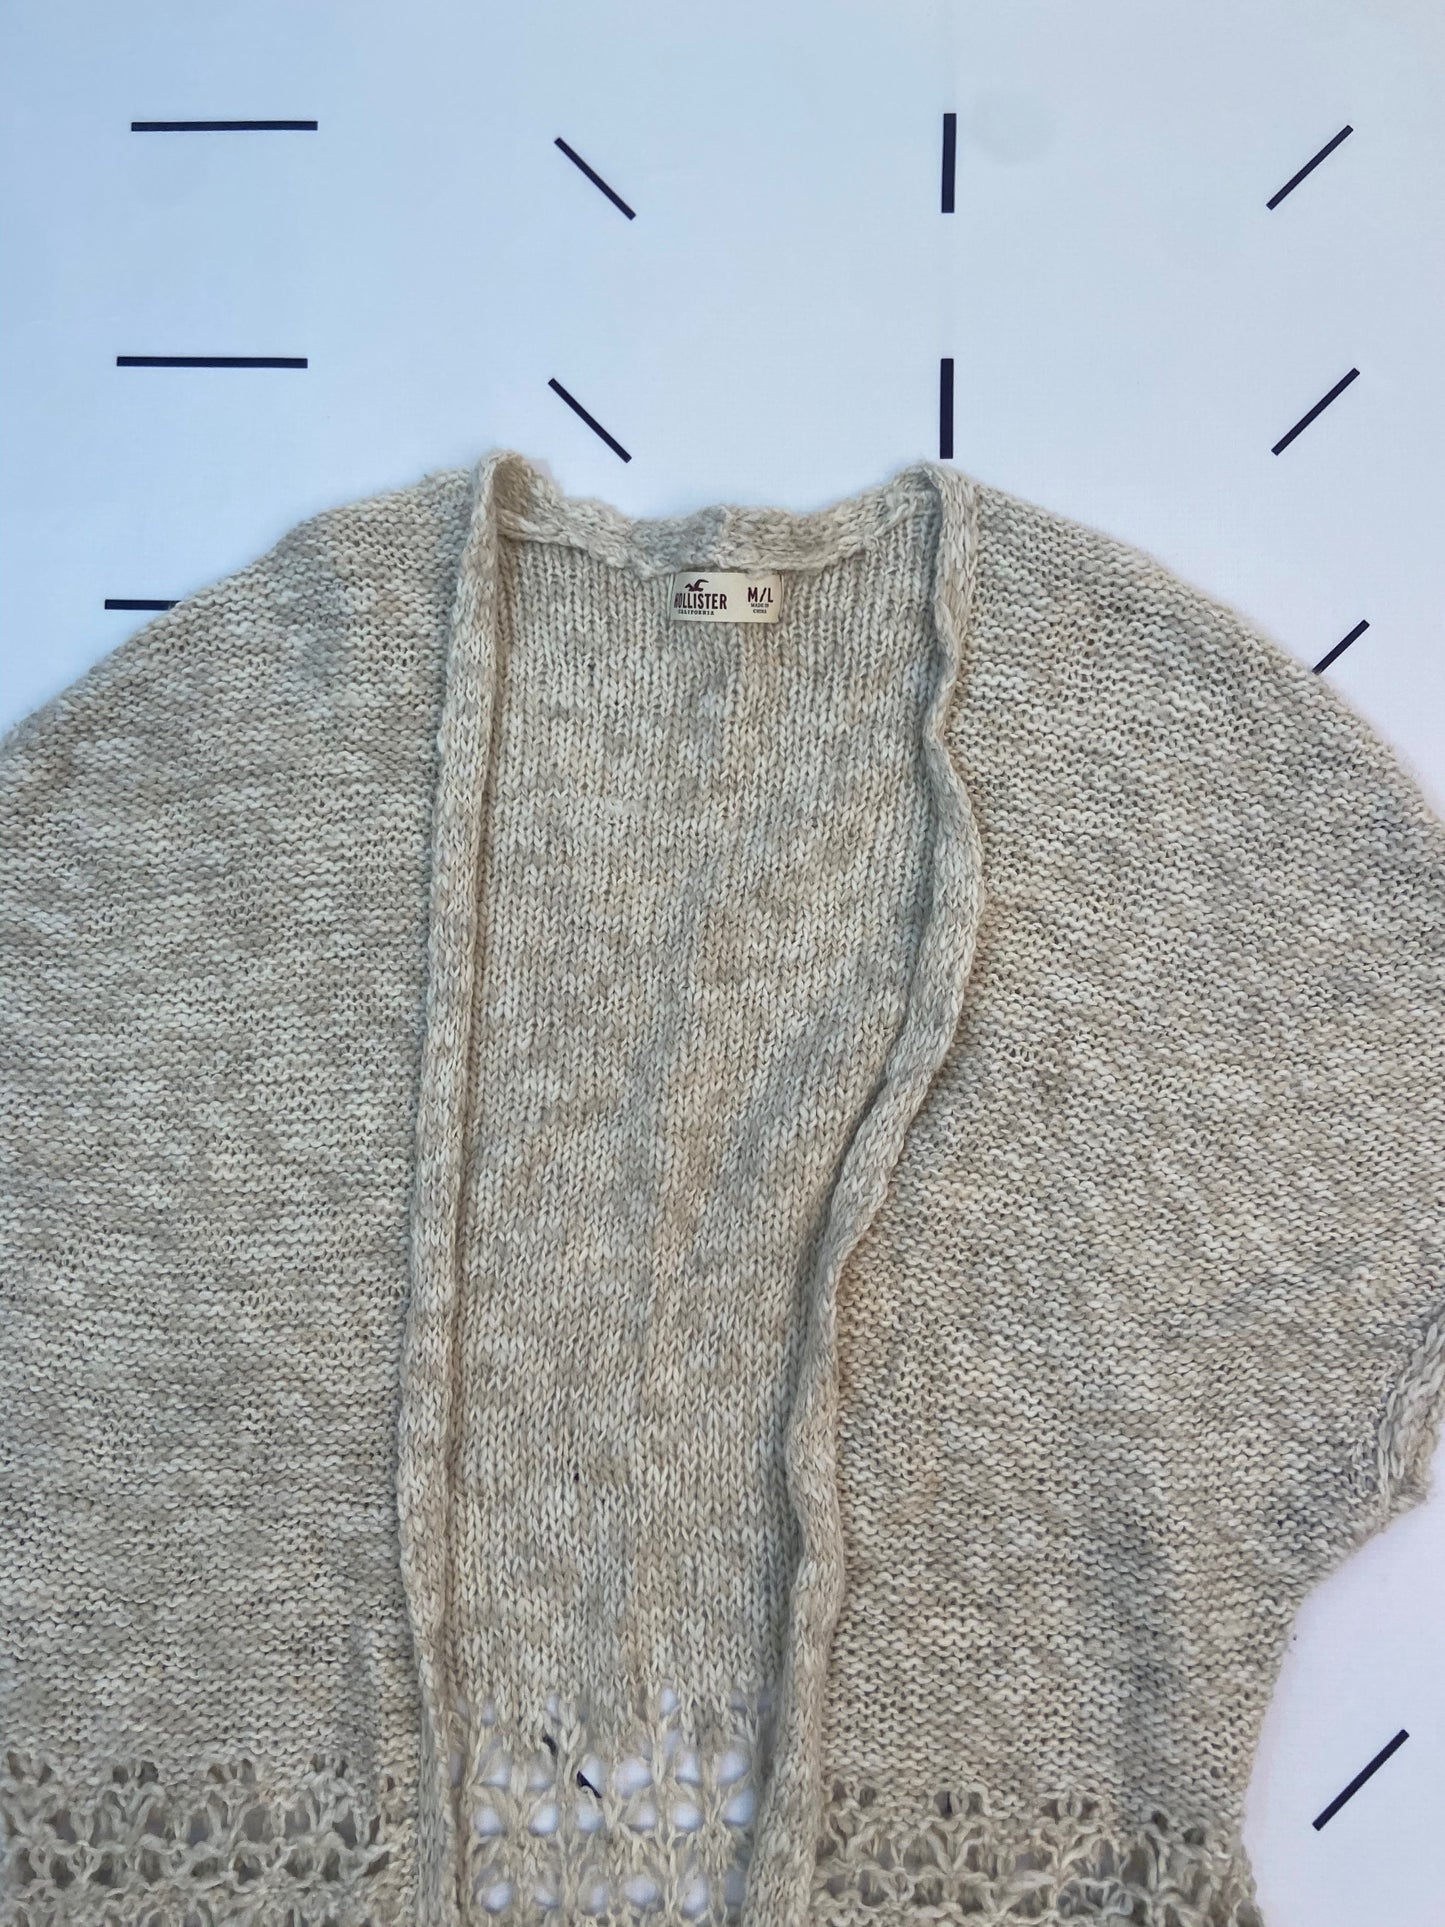 Woven Knit Sleeveless Cardigan - L (M/L)